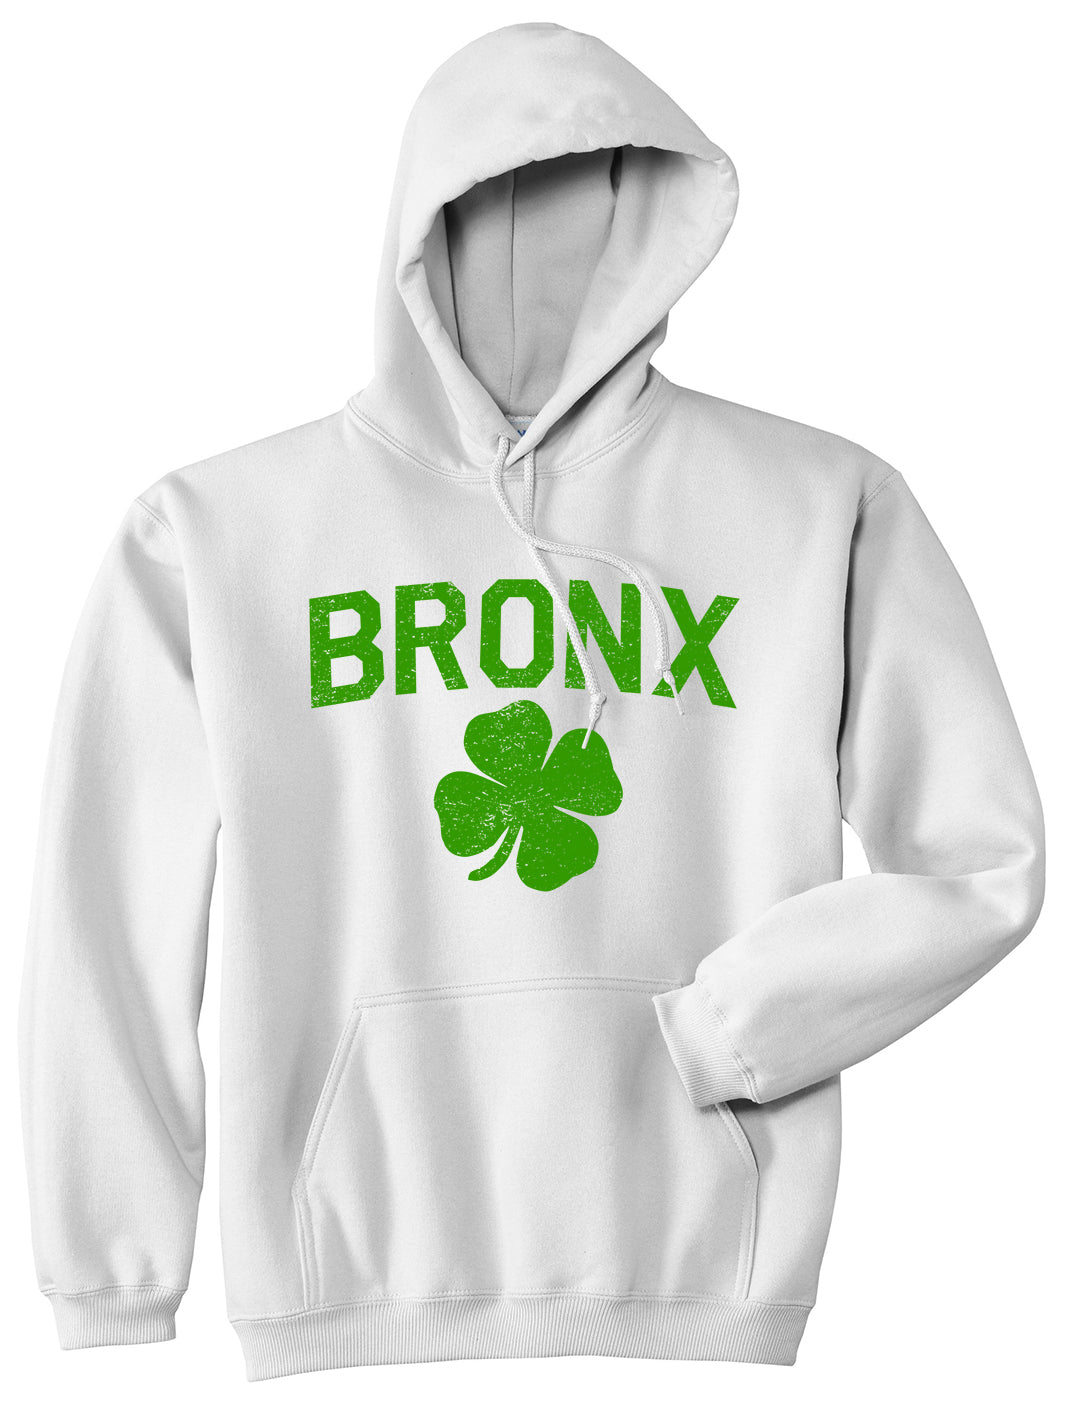 The Bronx Irish St Patricks Day Mens Pullover Hoodie White